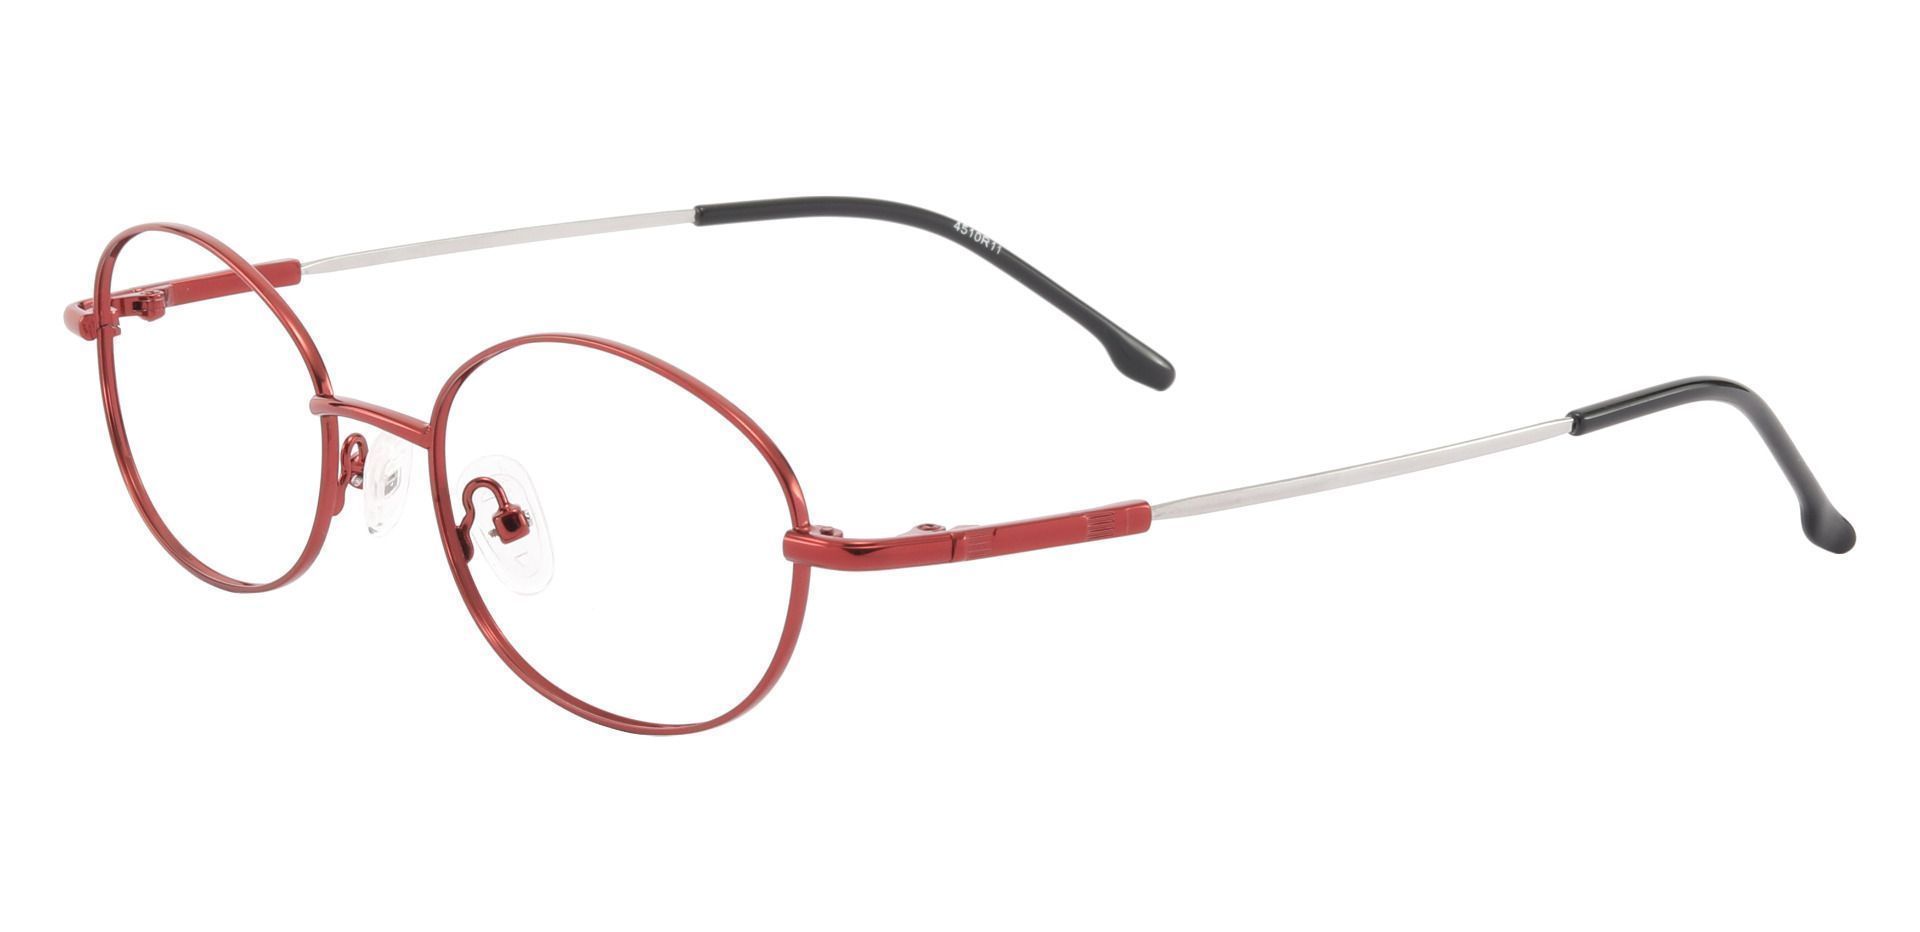 Calera Oval Prescription Glasses - Red